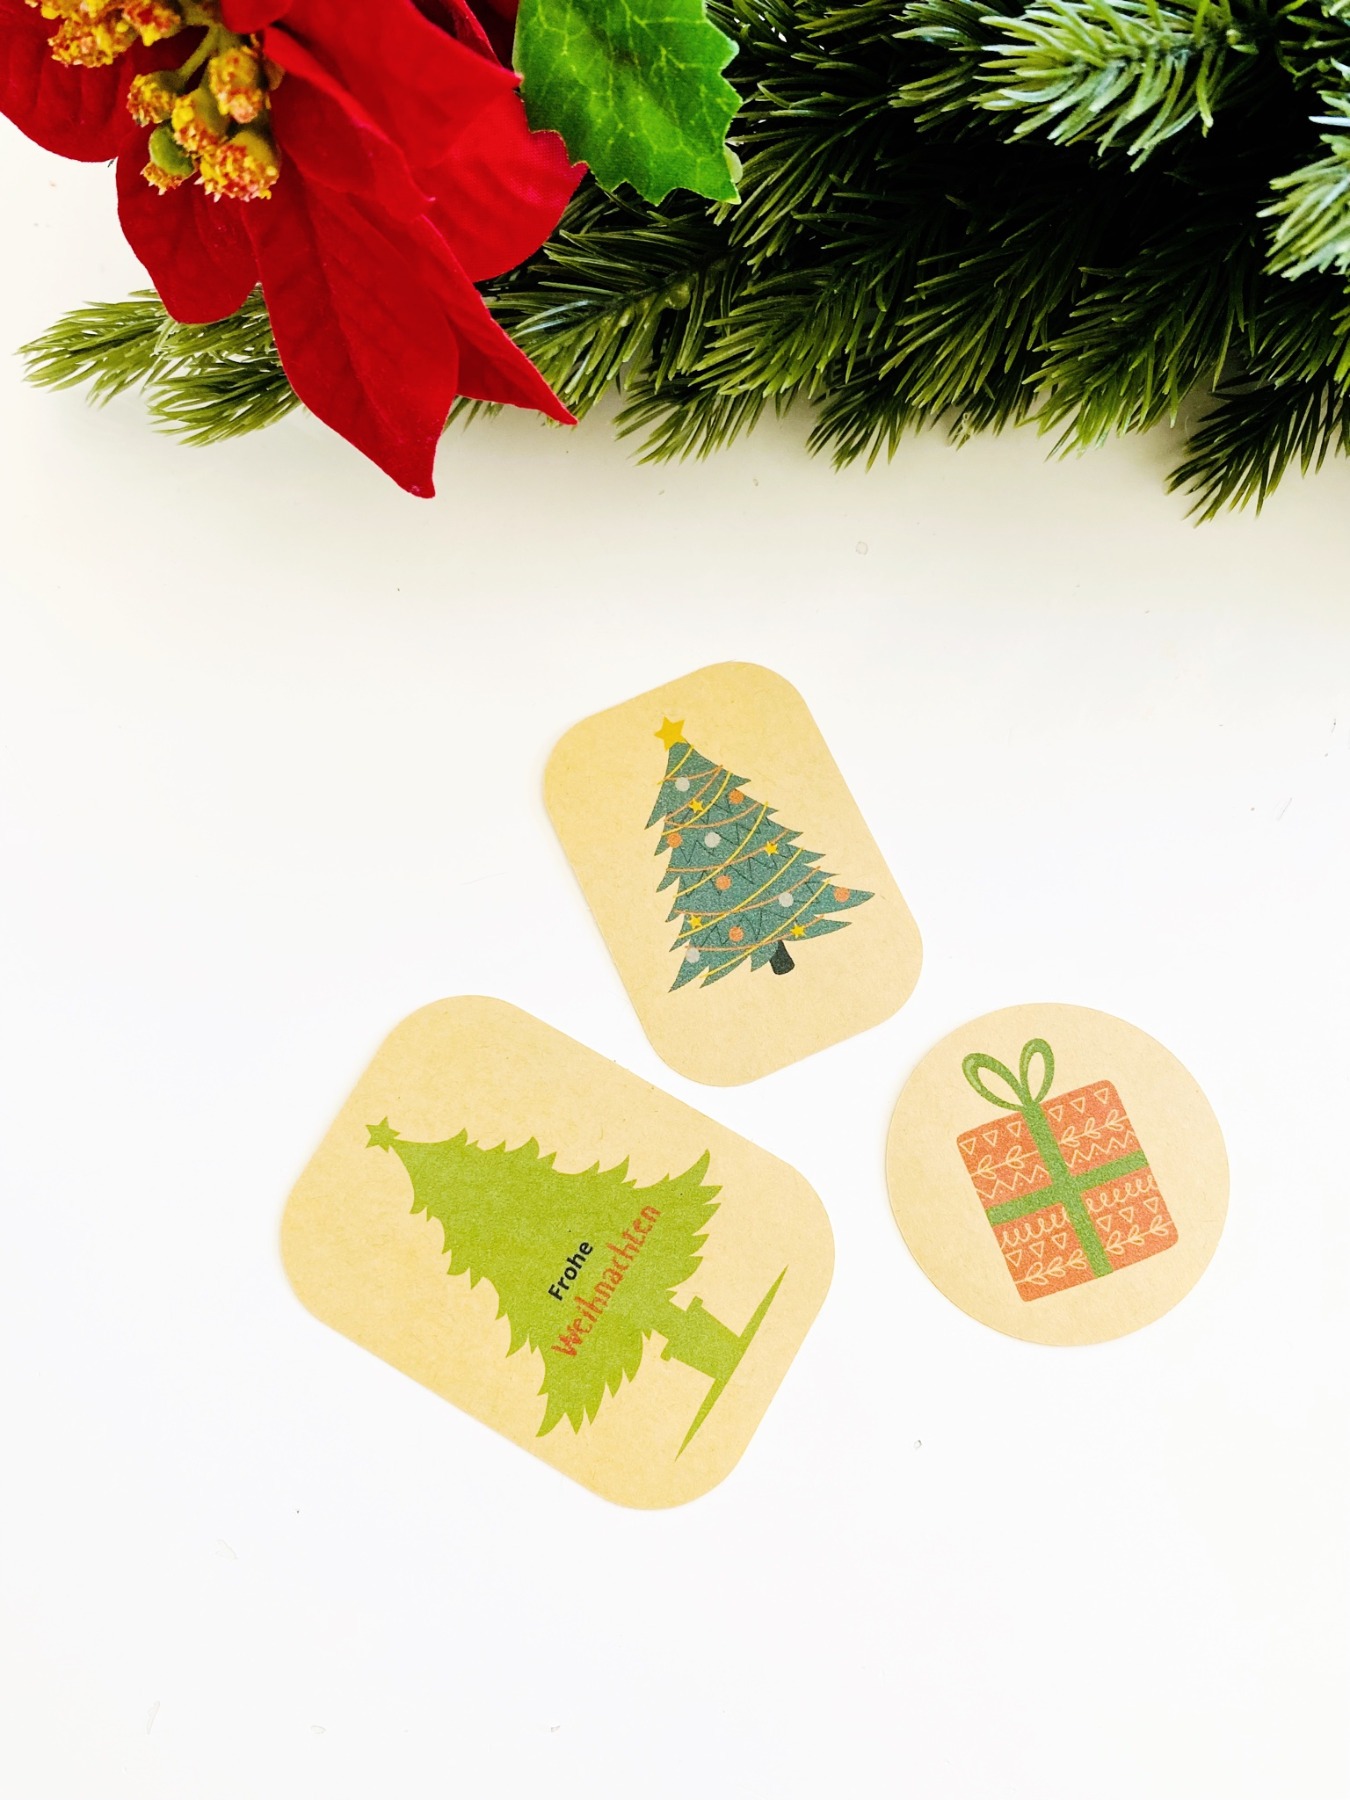 Bastelset für Weihnachten, DIY Kit Weihnachtskarten basteln, Weihnachtsgeschenke verpacken Ideen 13